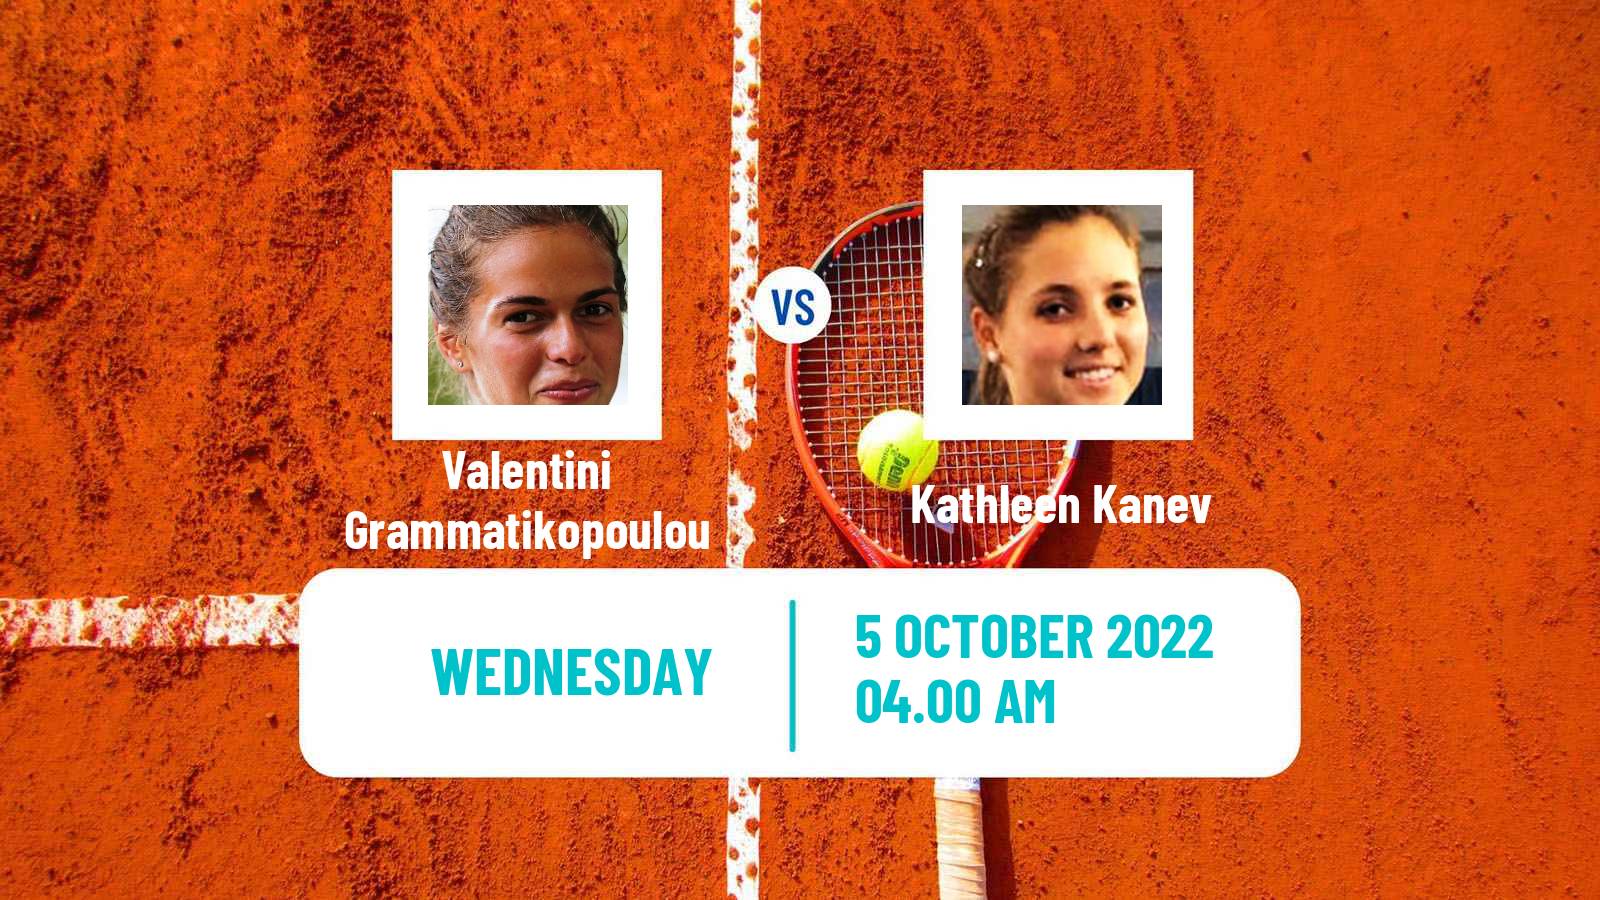 Tennis ITF Tournaments Valentini Grammatikopoulou - Kathleen Kanev